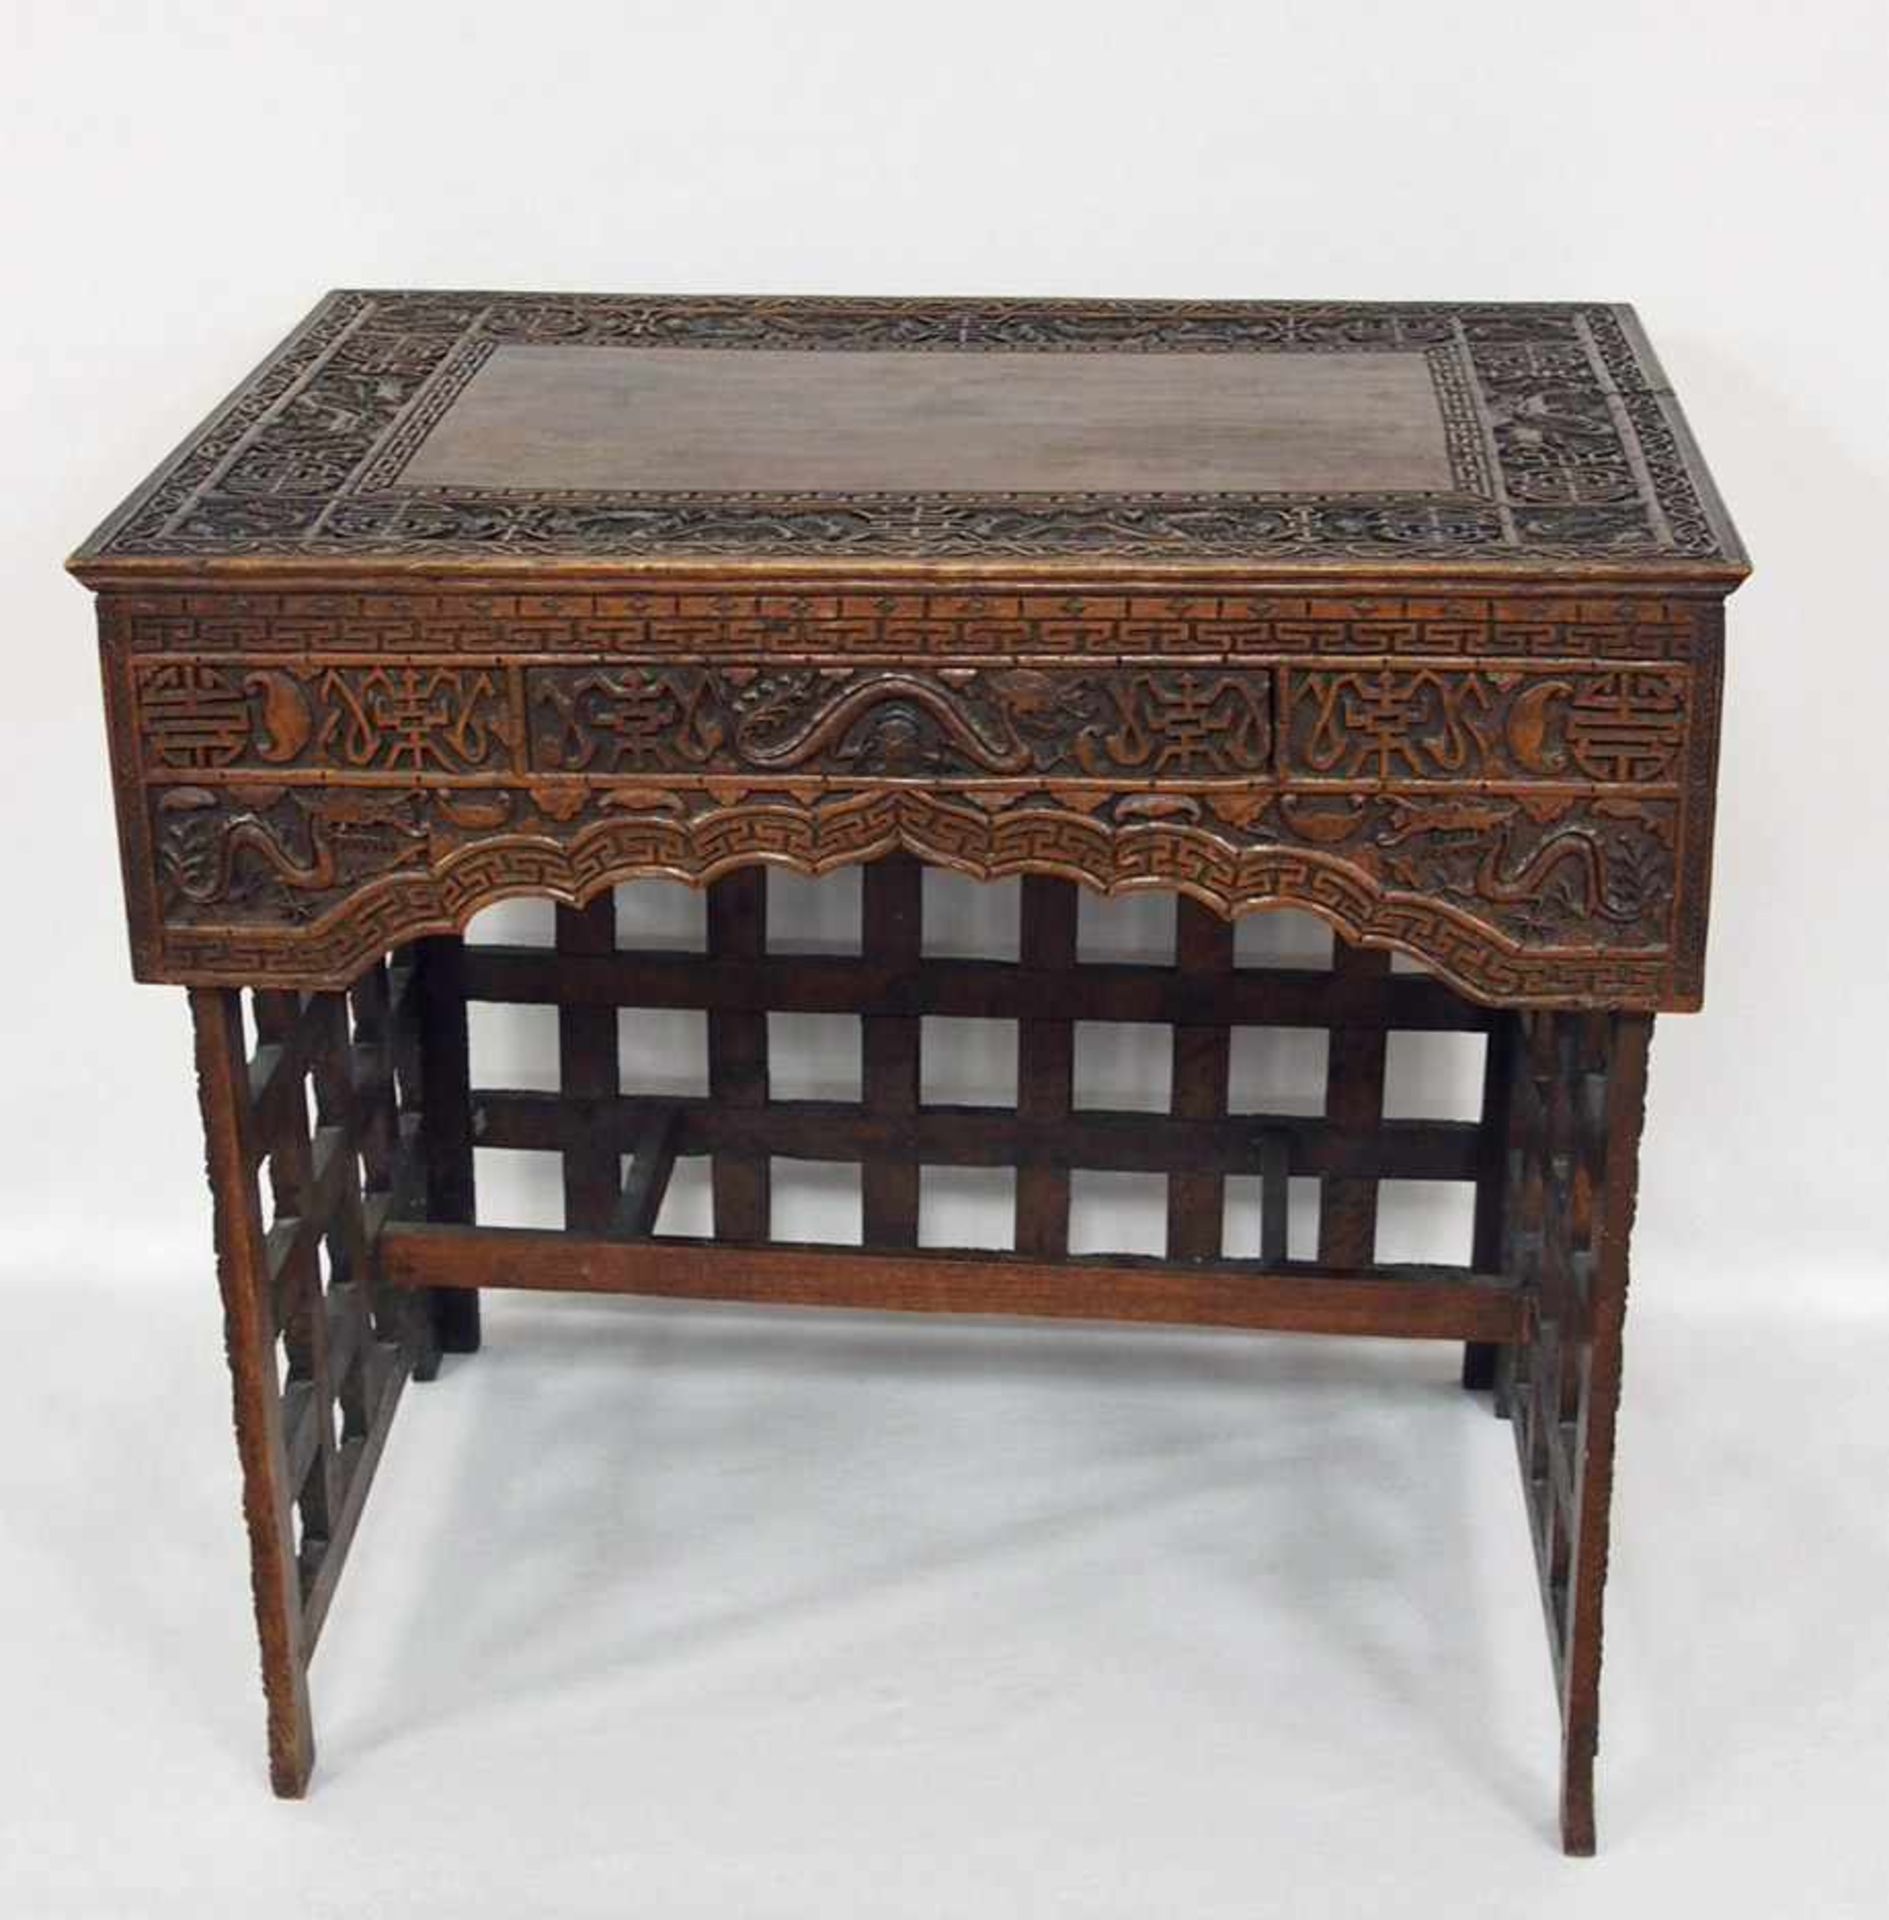 Chinesischer Tisch mit Schublademit Drachenmotiven, Holz, geschnitzt, um 1850, 62 x 68 x 47 cm - Image 2 of 3